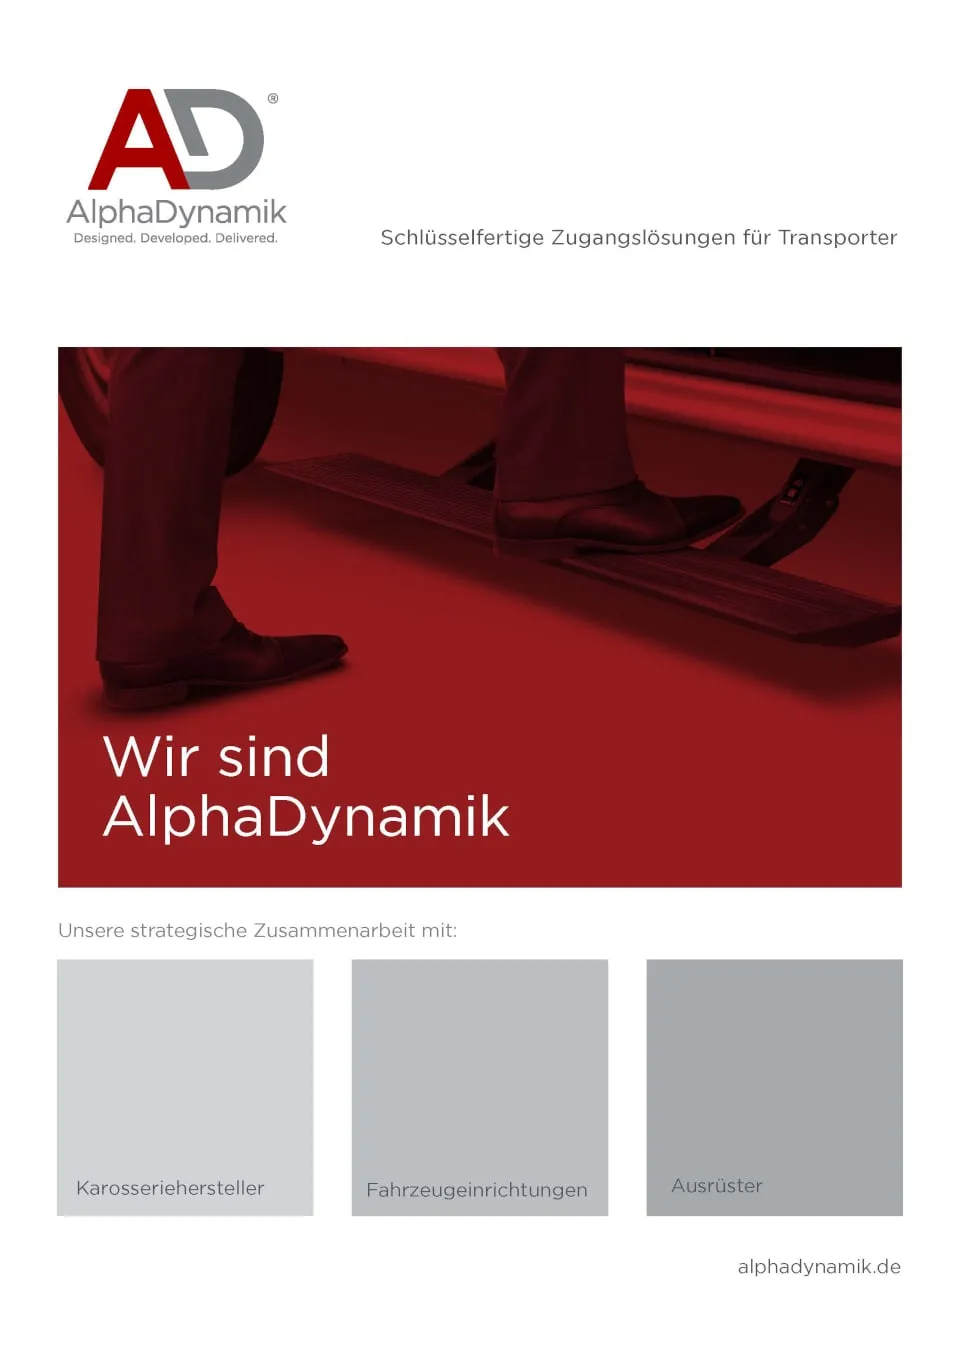 Schlüsselfertigen Zugangslösungen für Transporter, AlphaDynamik GmbH